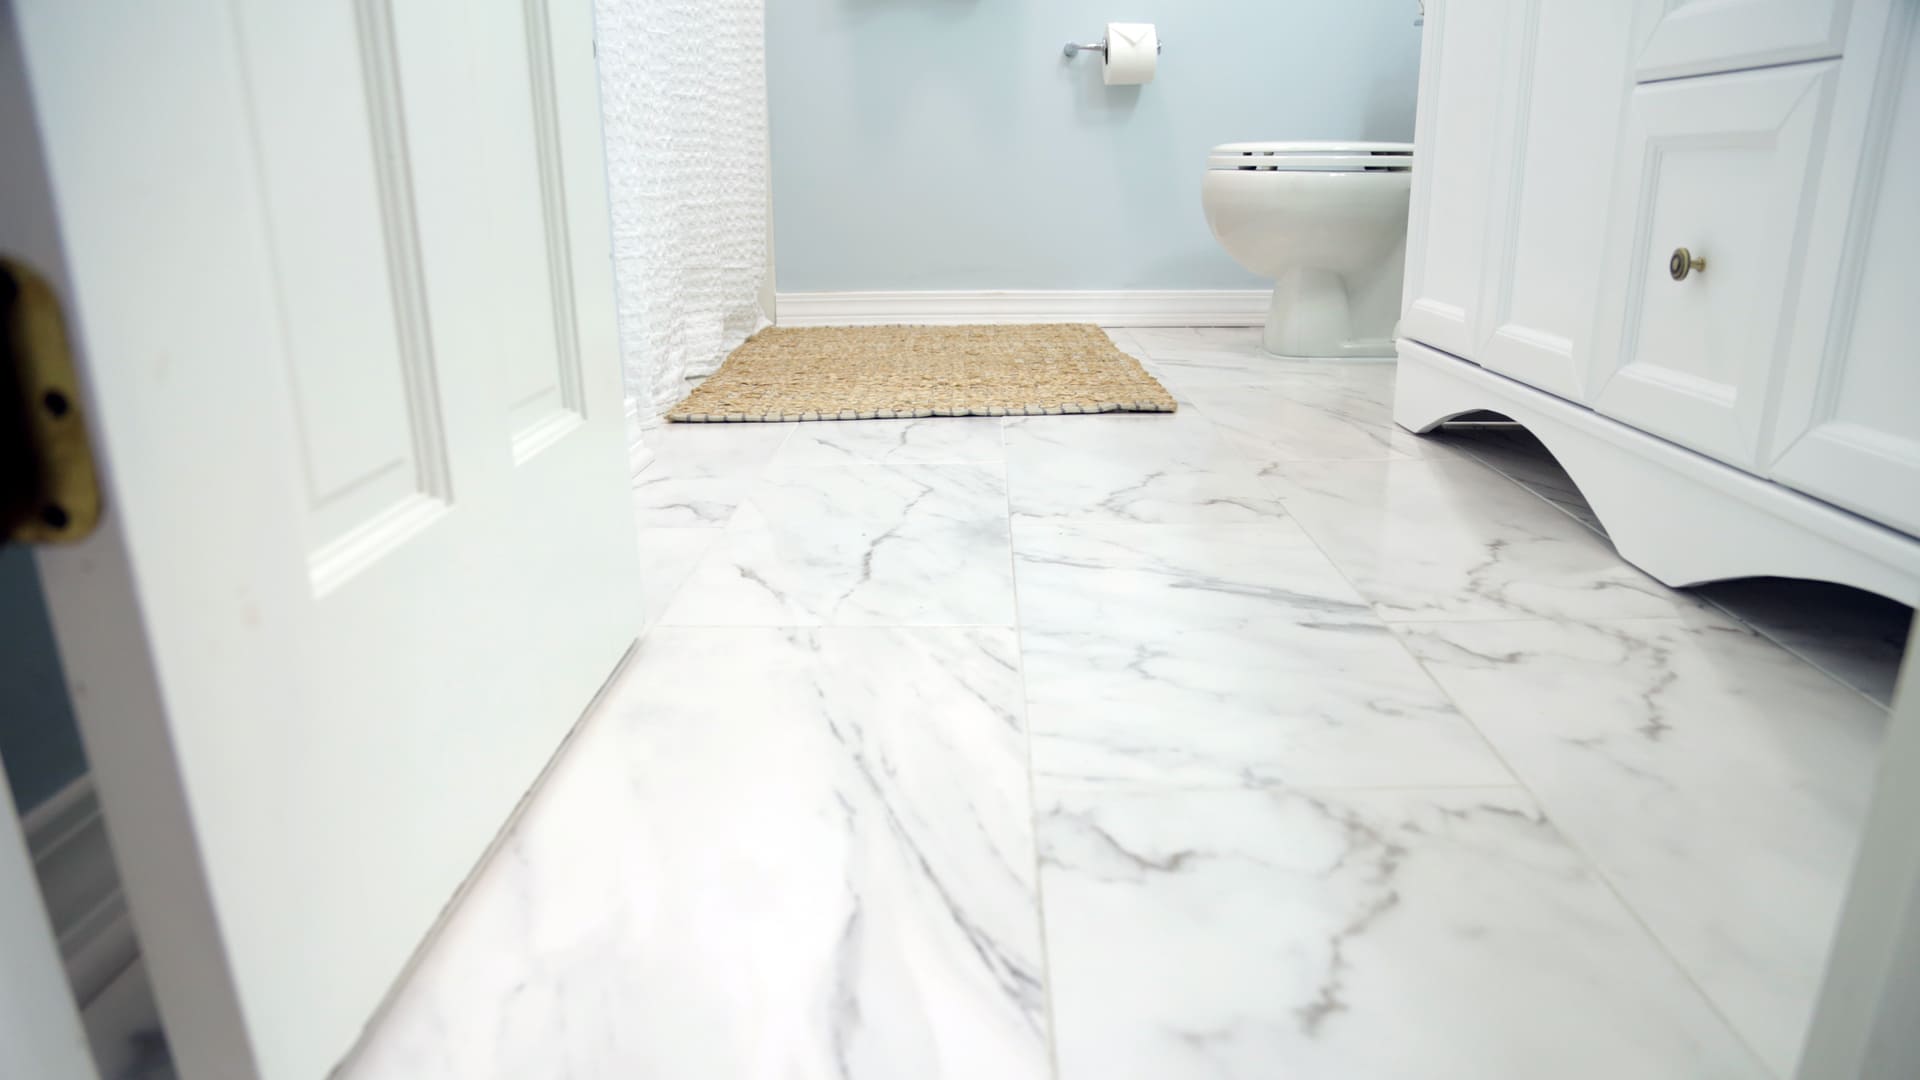 How To Lay Ceramic Tile On A Floor, Ceramic Bathroom Floor Tiles